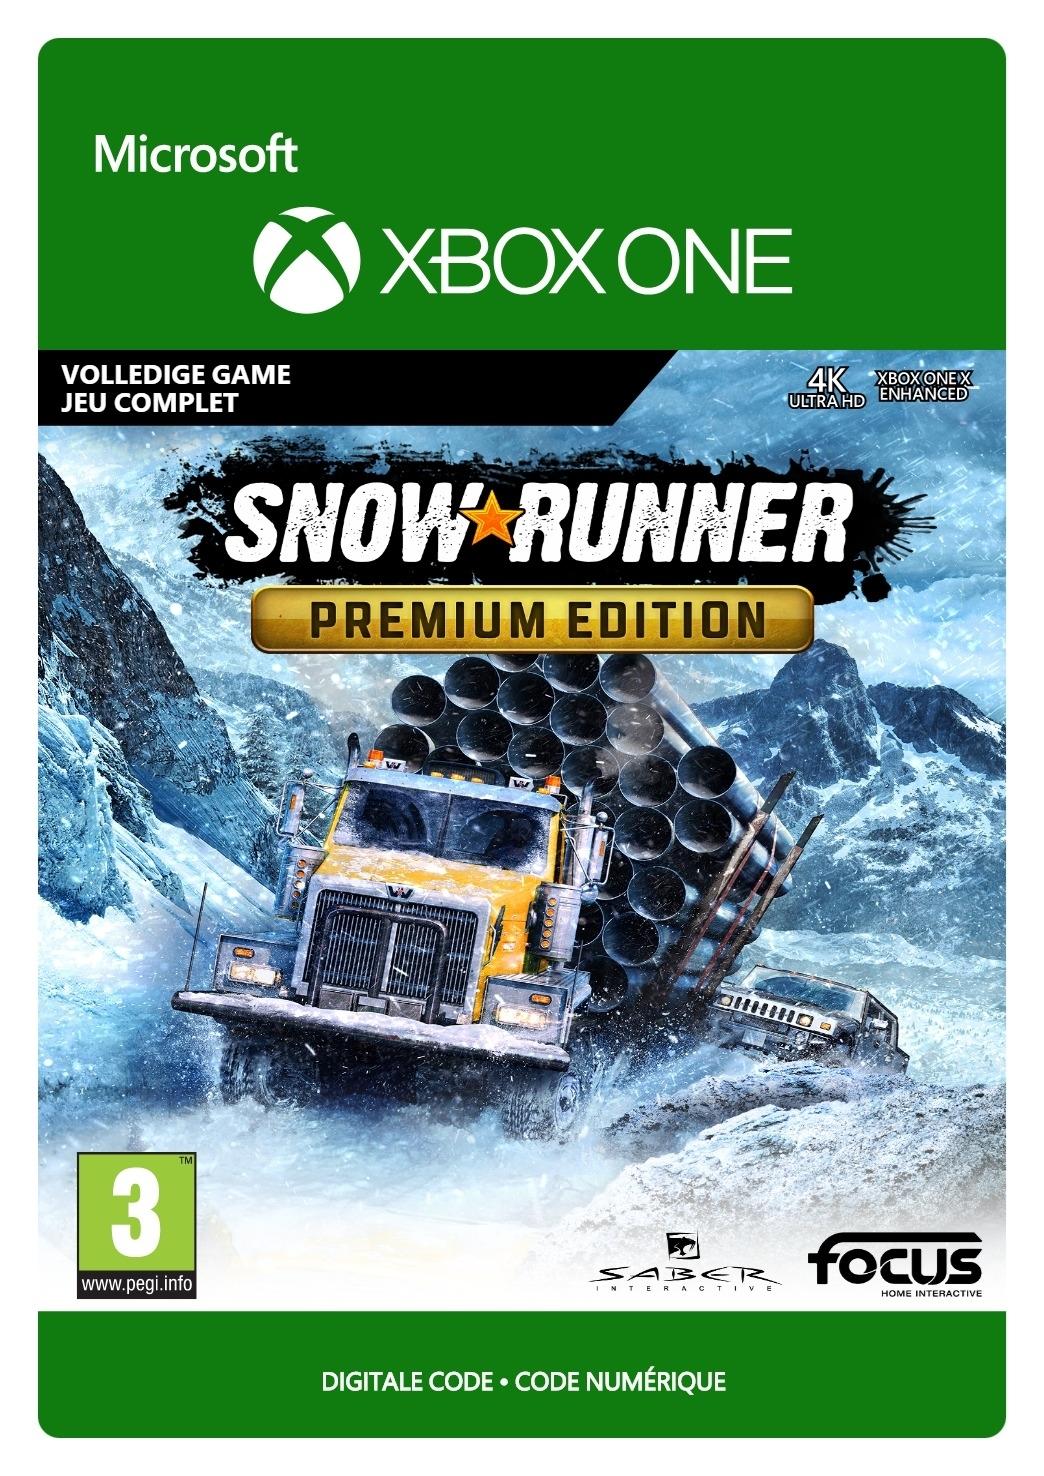 SnowRunner - Premium Edition - Xbox One - Game | G3Q-00913 (59c905d3-5d30-d446-976e-35c094c9c663)